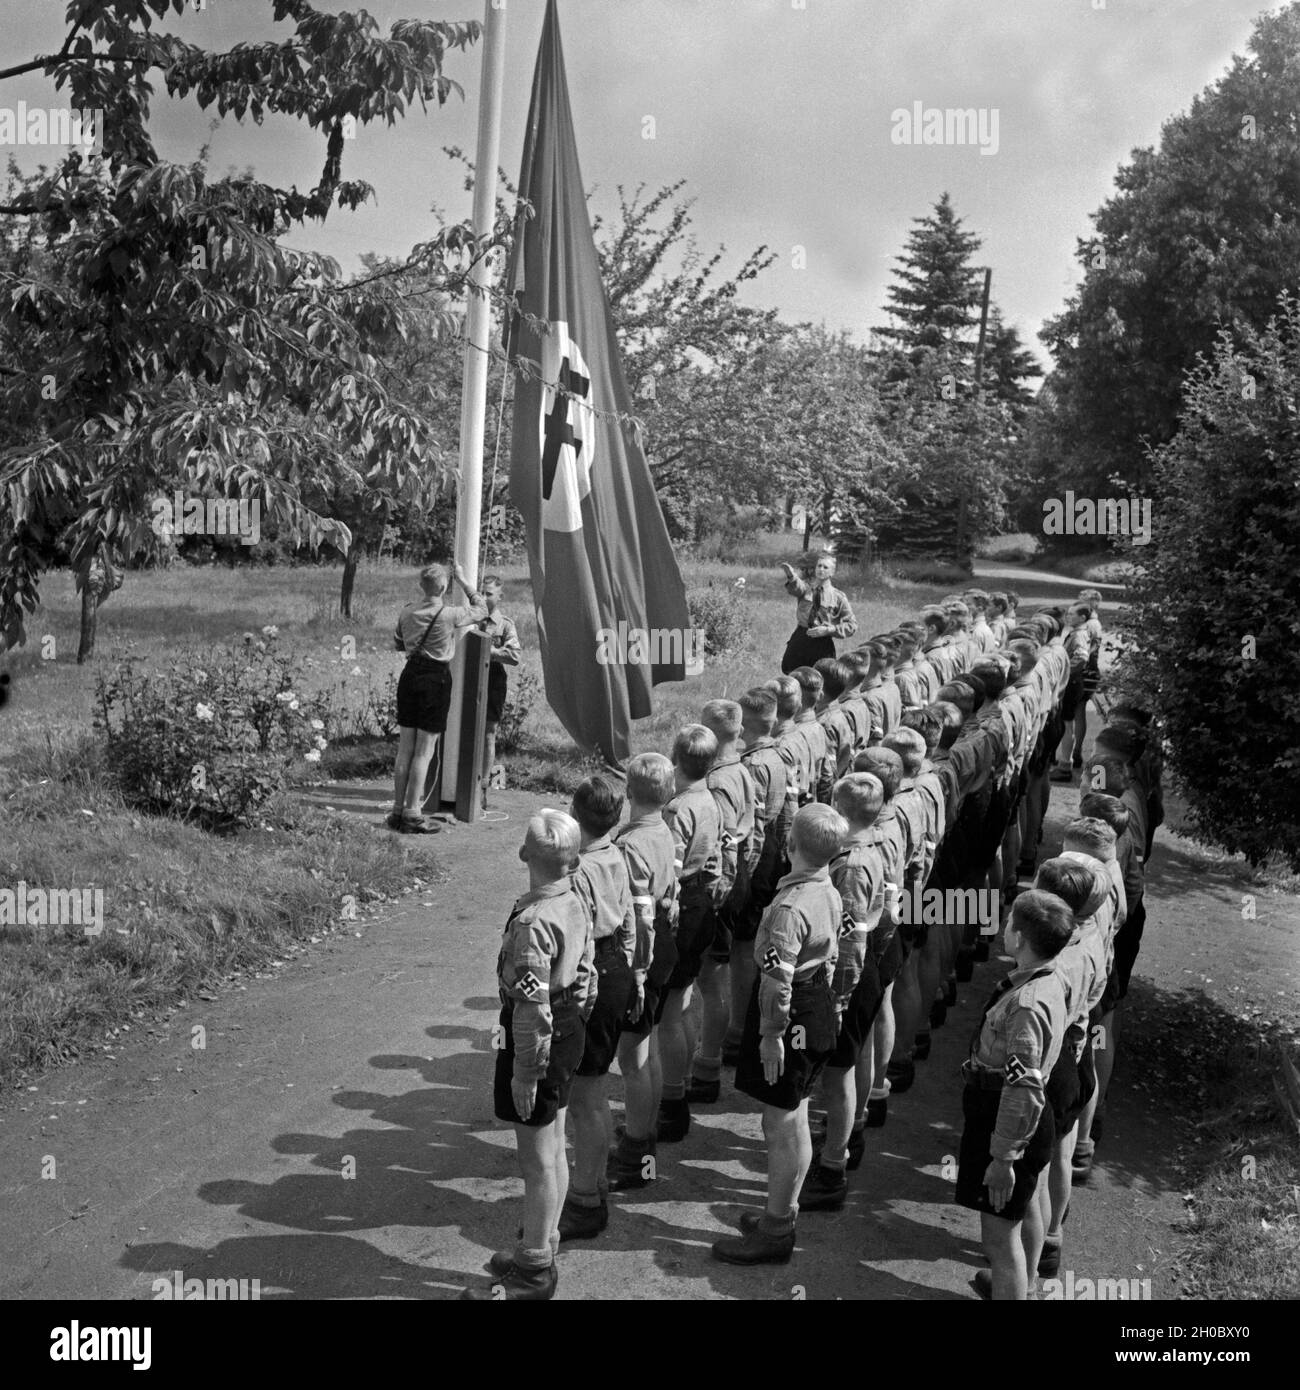 Morgendlicher Fahnenappell im Jungen Landjahr Lager in Bevensen in der Lüneburger Heide, Deutschland 1930er Jahre. Matutinal flag muster at the Hitler youth camp at Bevensen, Germany 1930s. Stock Photo